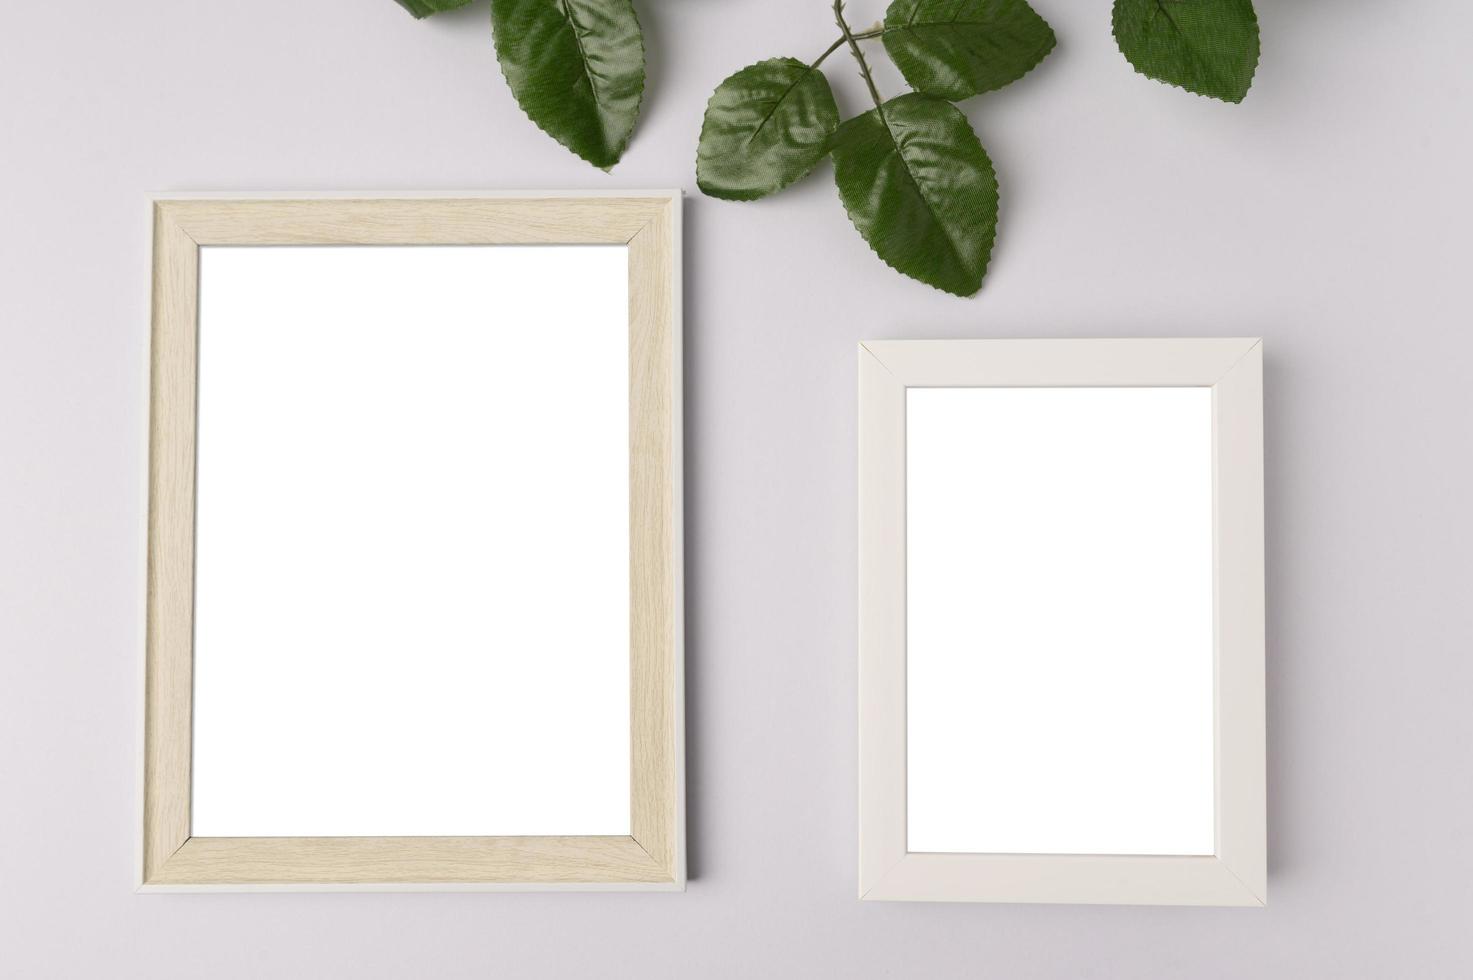 Dos marcos de fotos en blanco y ramas de hojas sobre fondo blanco.